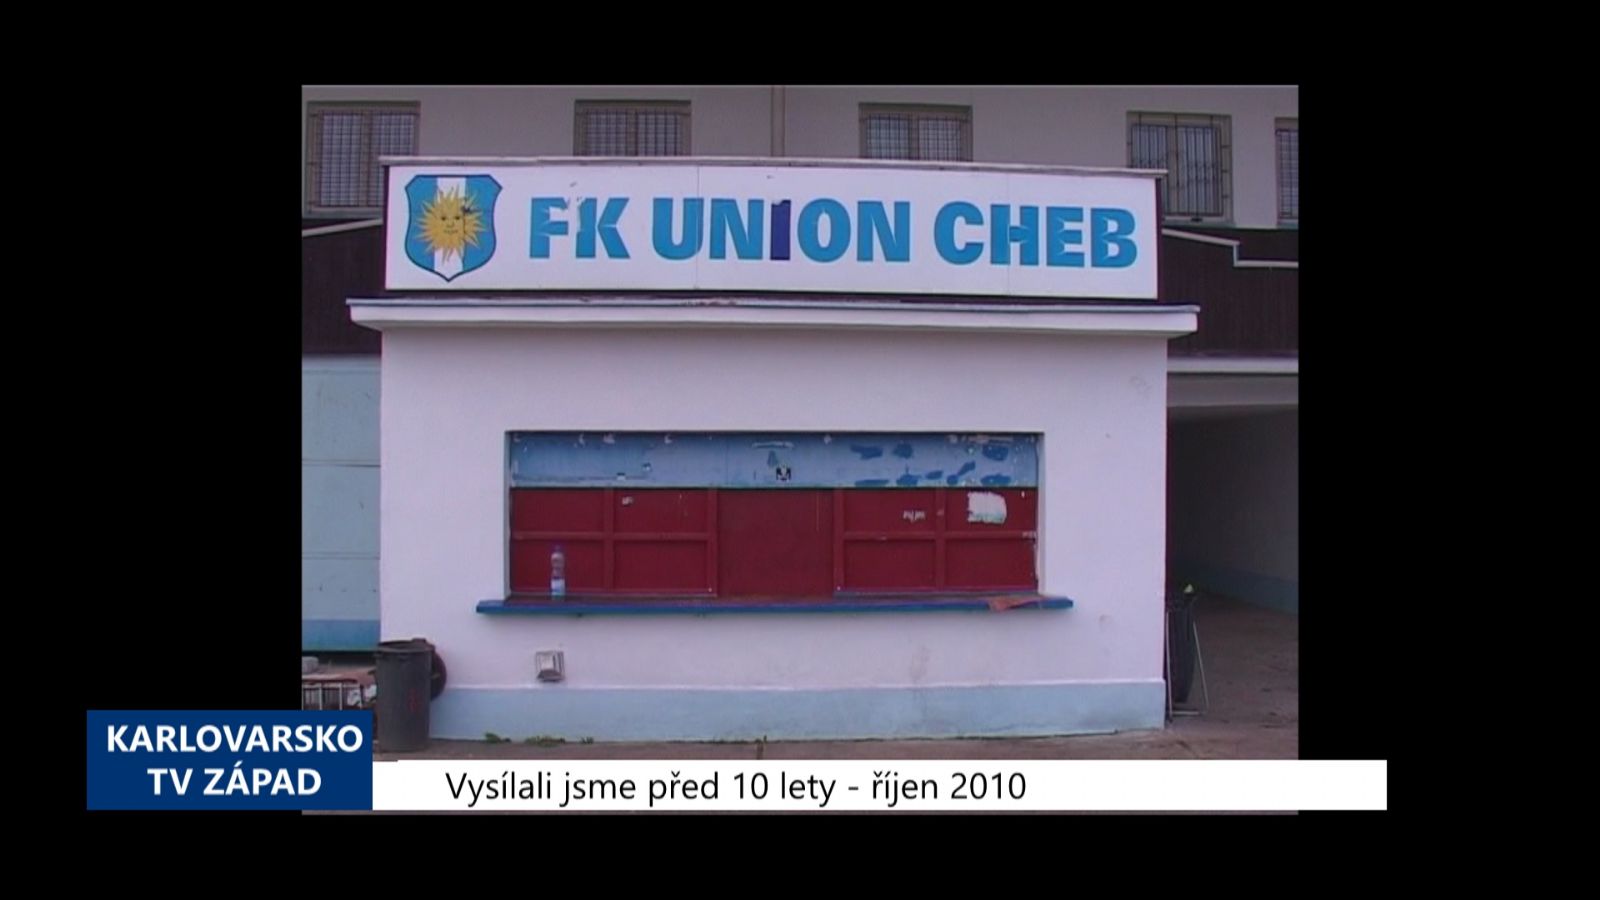 2010 – Cheb: Město chce převzít sportovní areál Lokomotivy (4196) (TV Západ)